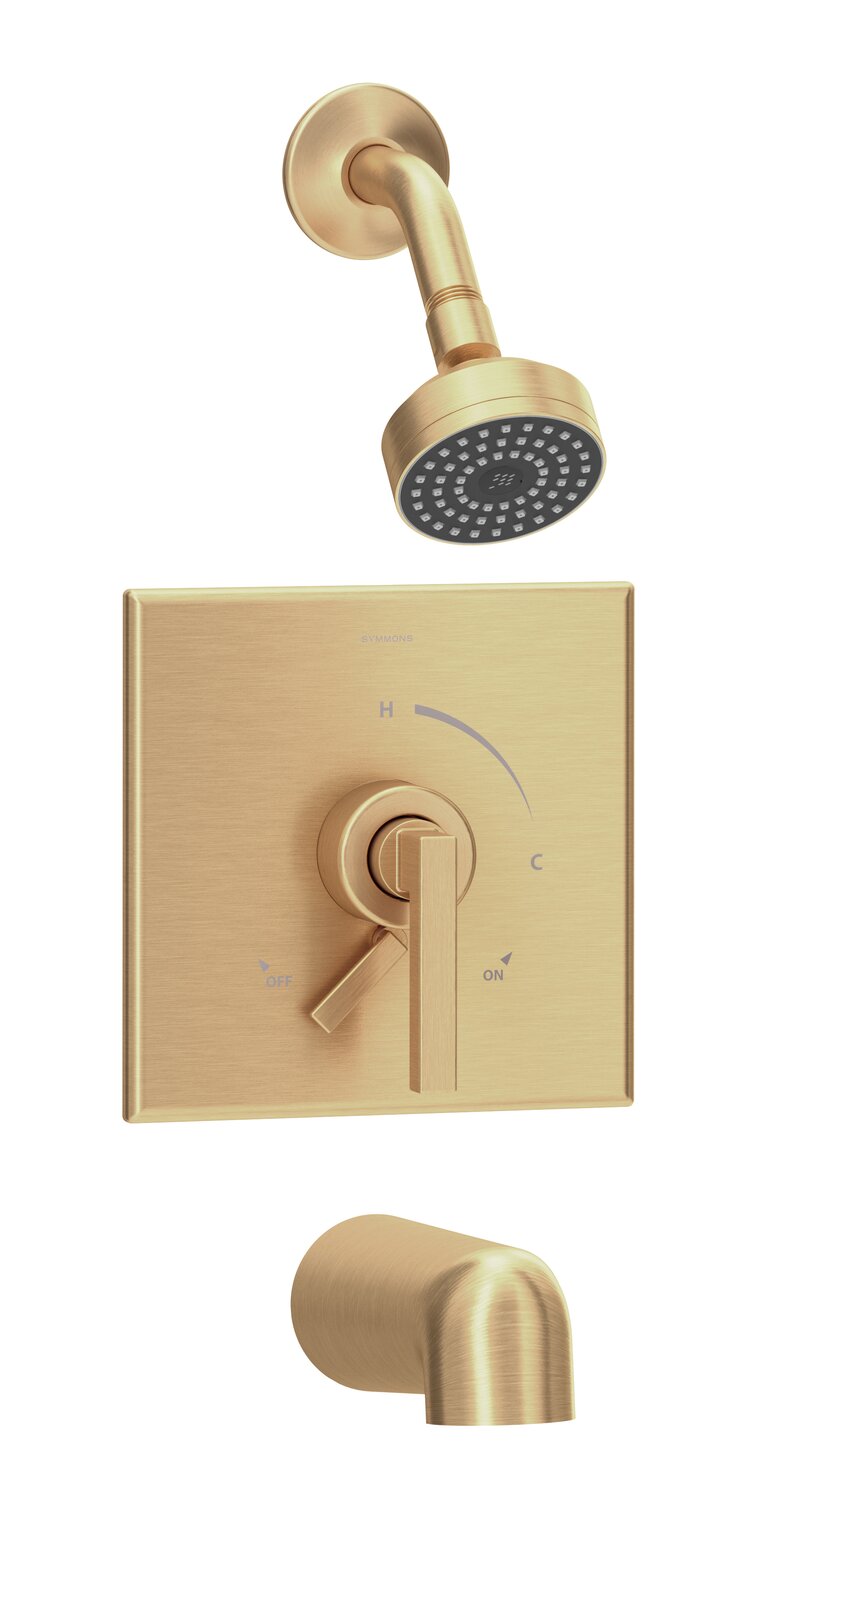 Rubinetto per vasca e doccia completo con montaggio a parete in oro spazzolato Aquacubic